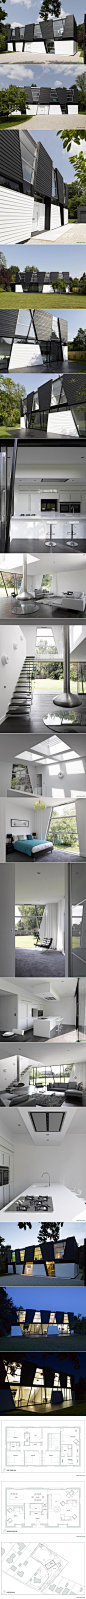 【崔西住宅】Matthew Heywood 设计，位于英国。黑白色调的建筑外观，独具立体几何感。没有了炫彩与缤纷，带来了简约与宁静。http://bit.ly/19eHat1